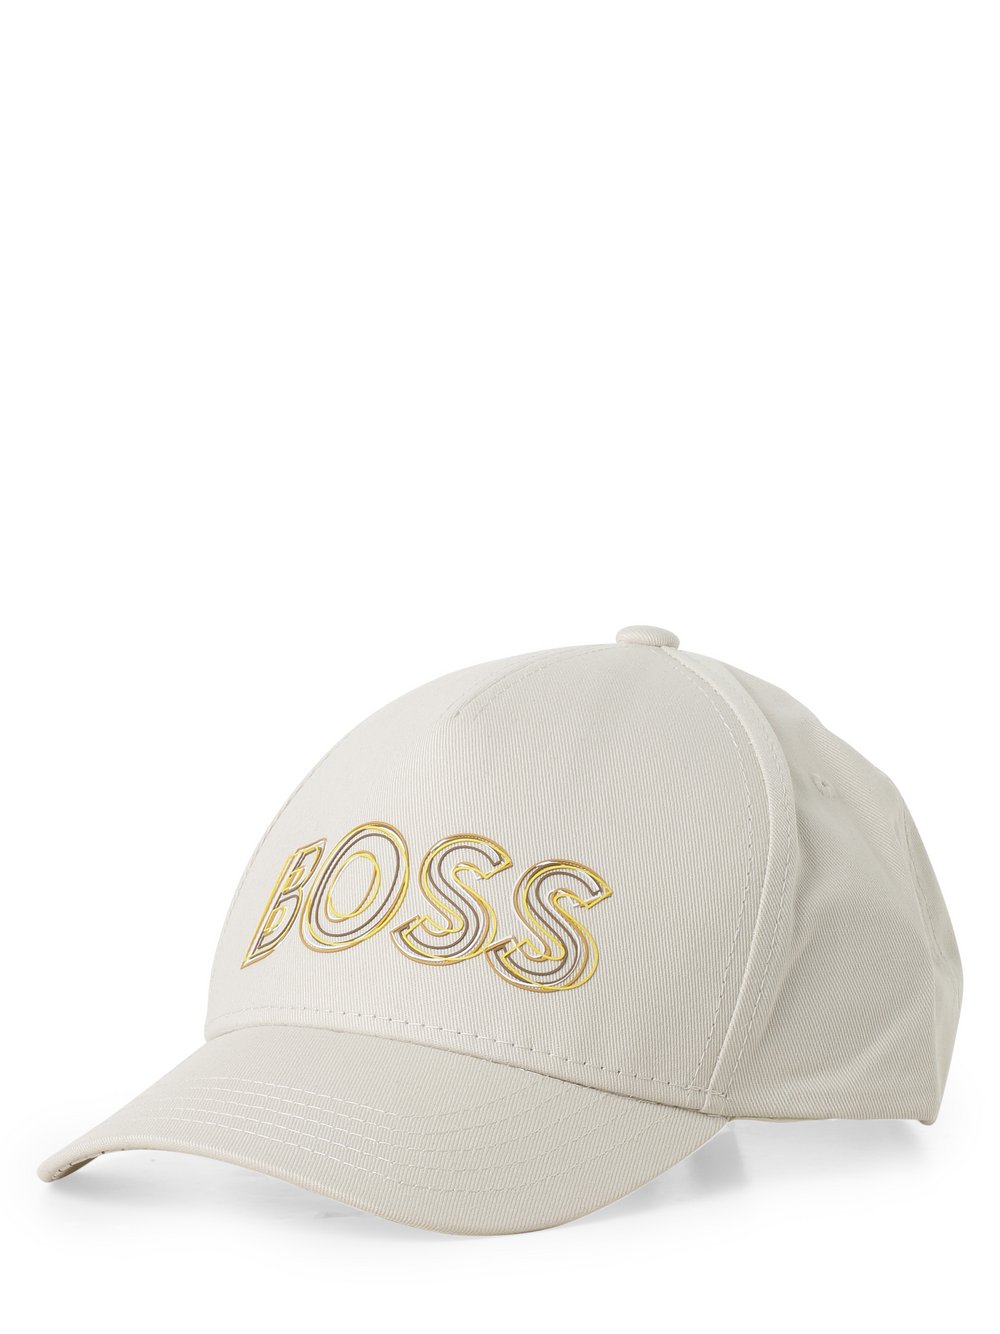 BOSS Green - Męska czapka z daszkiem, beżowy